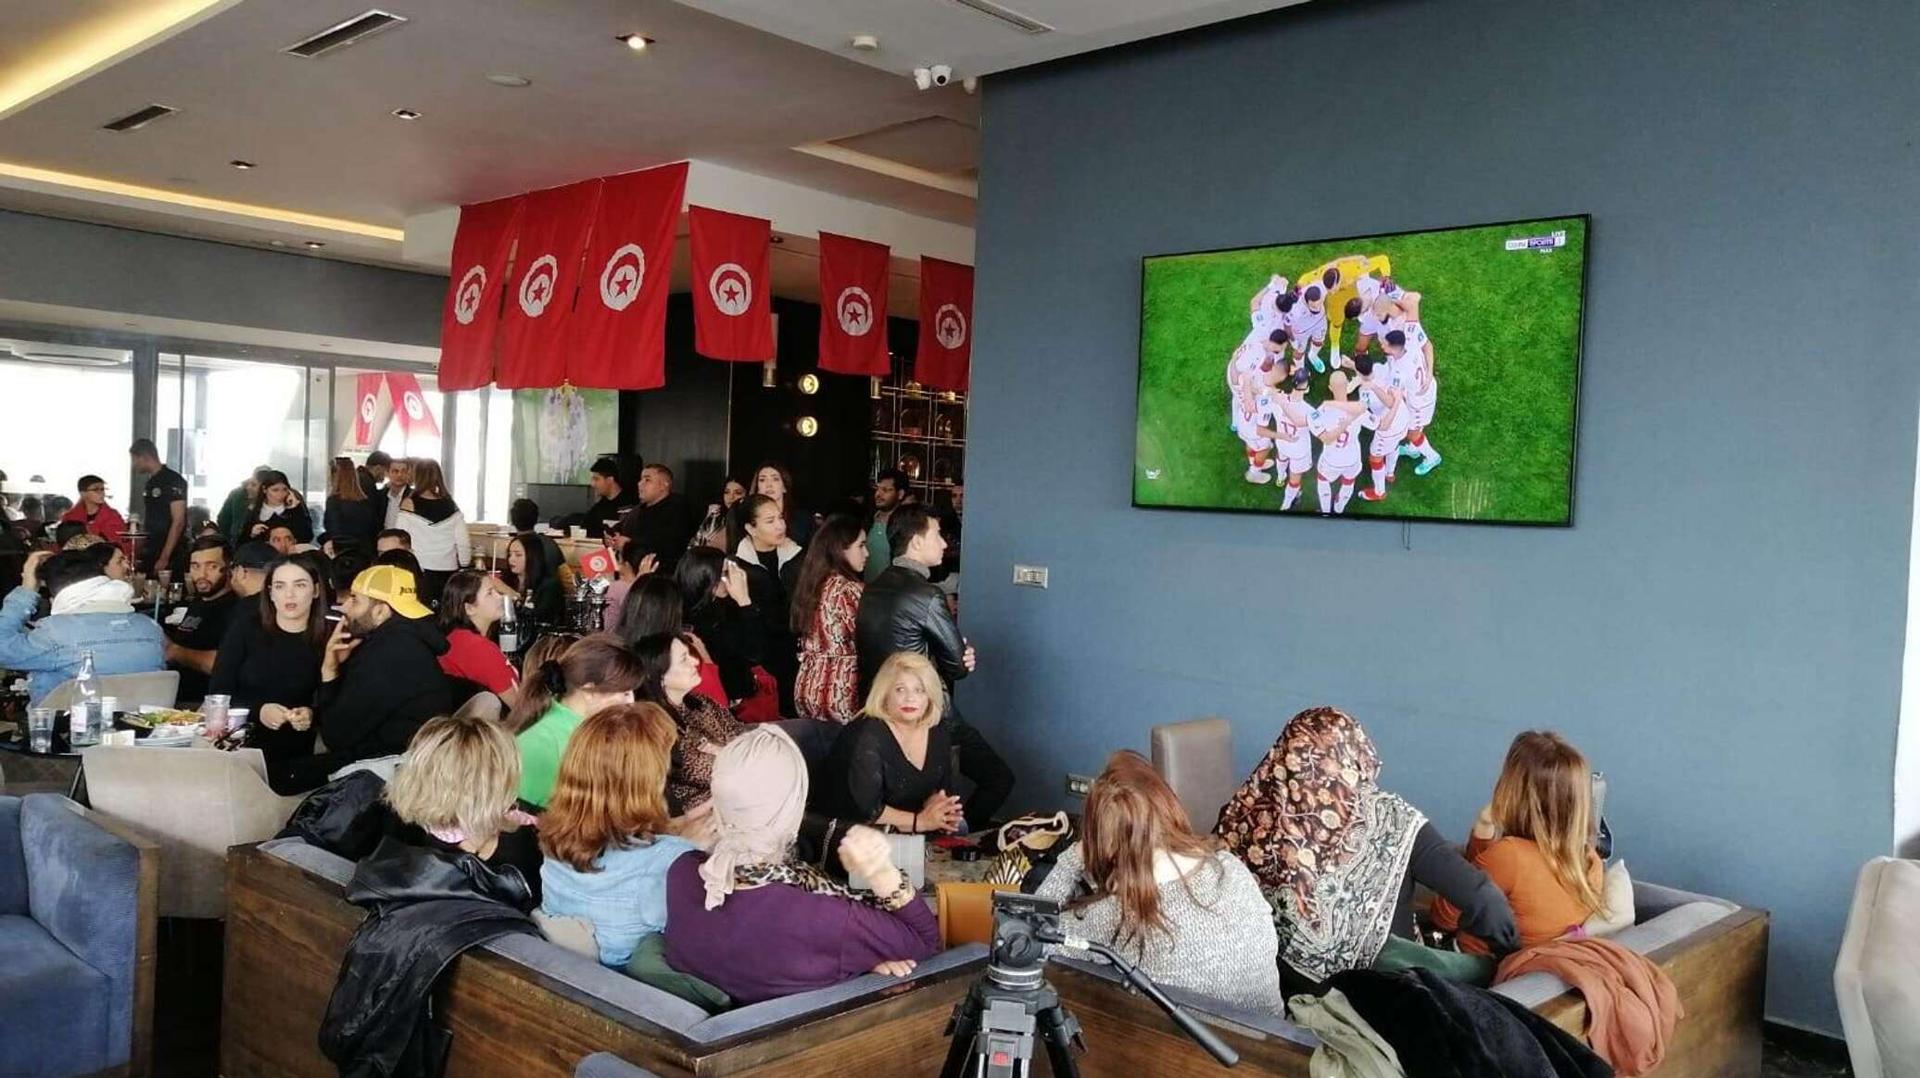 أجواء حماسية في المقاهي خلال مباراة منتخب تونس ضد نظيره الأسترالي